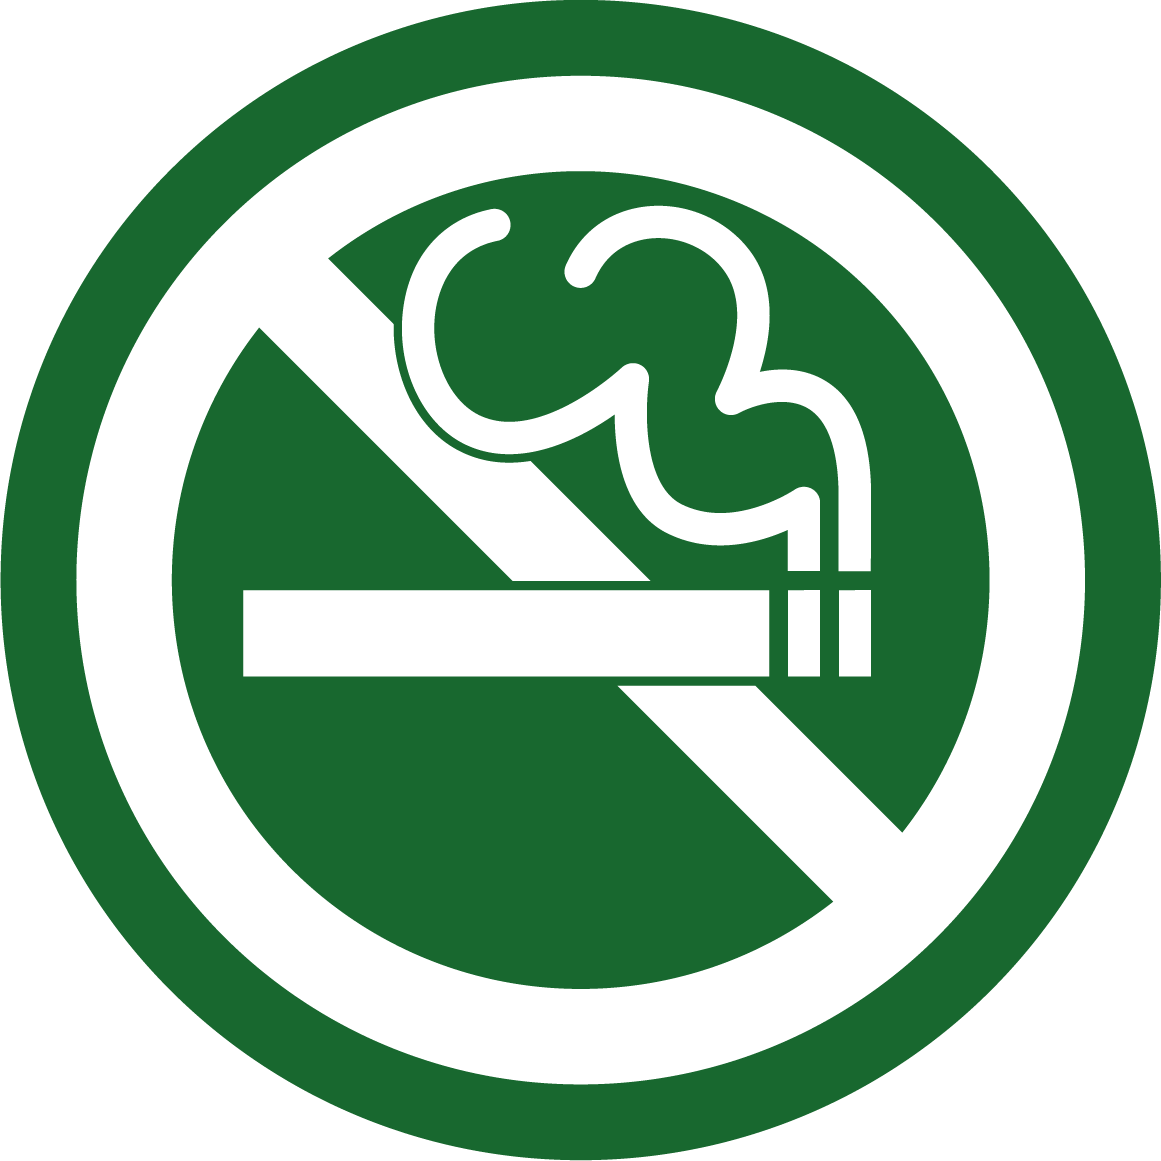 Не курить PNG, No smoking PNG